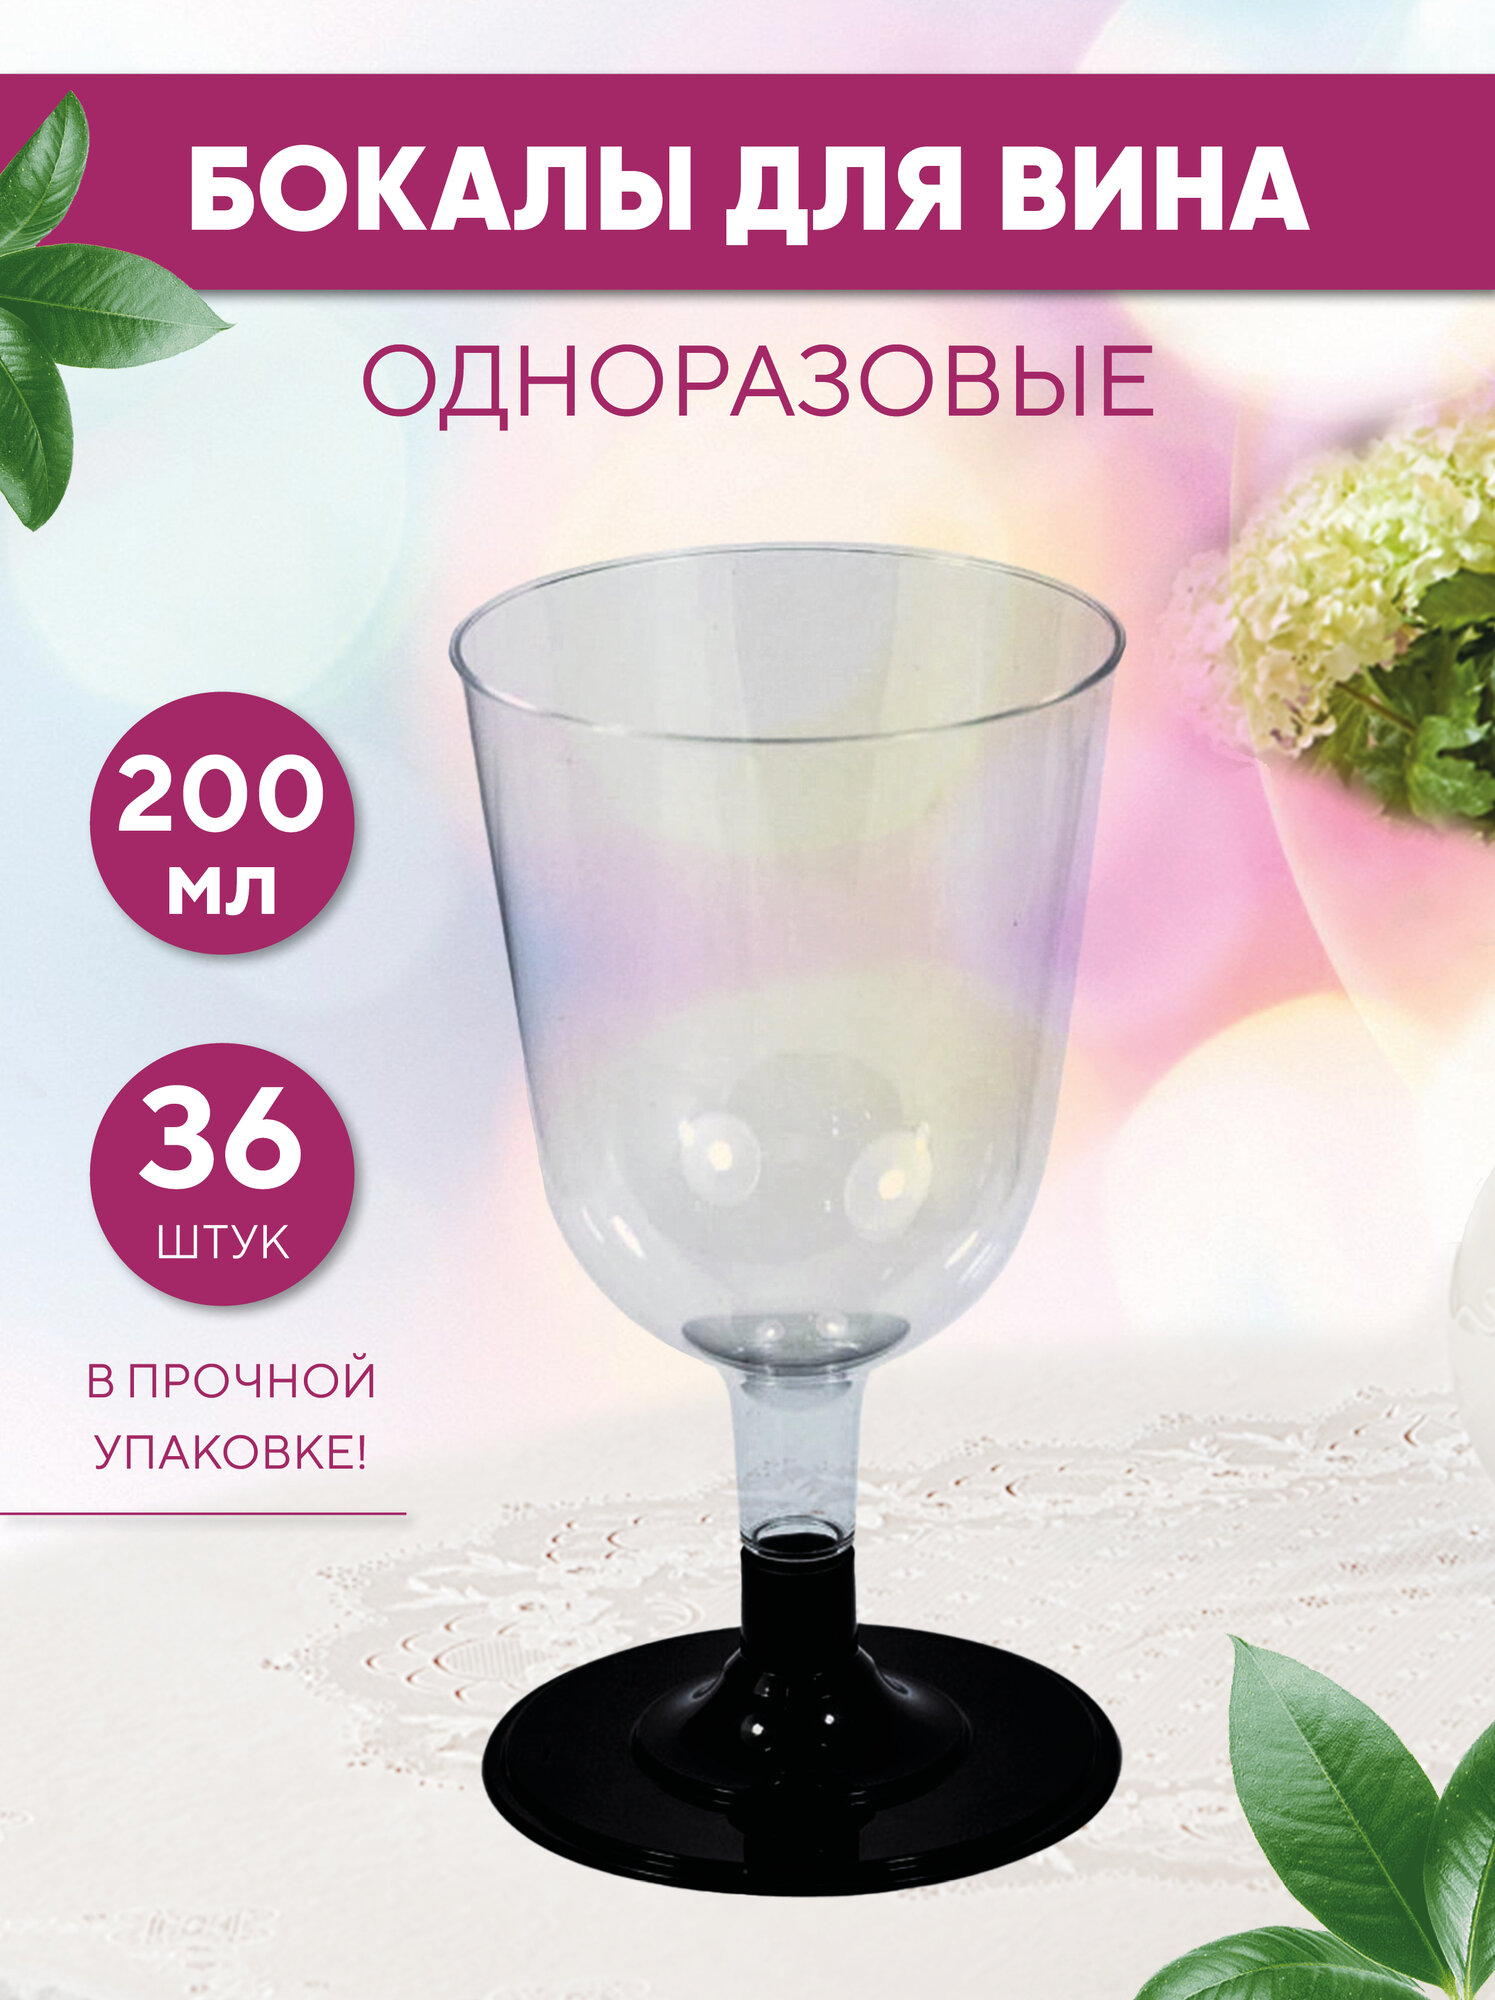 Бокал для вина одноразовый 200 мл со съемной черной ножкой, прозрачный, полистирол, 36 шт. в коробке (19-2553)